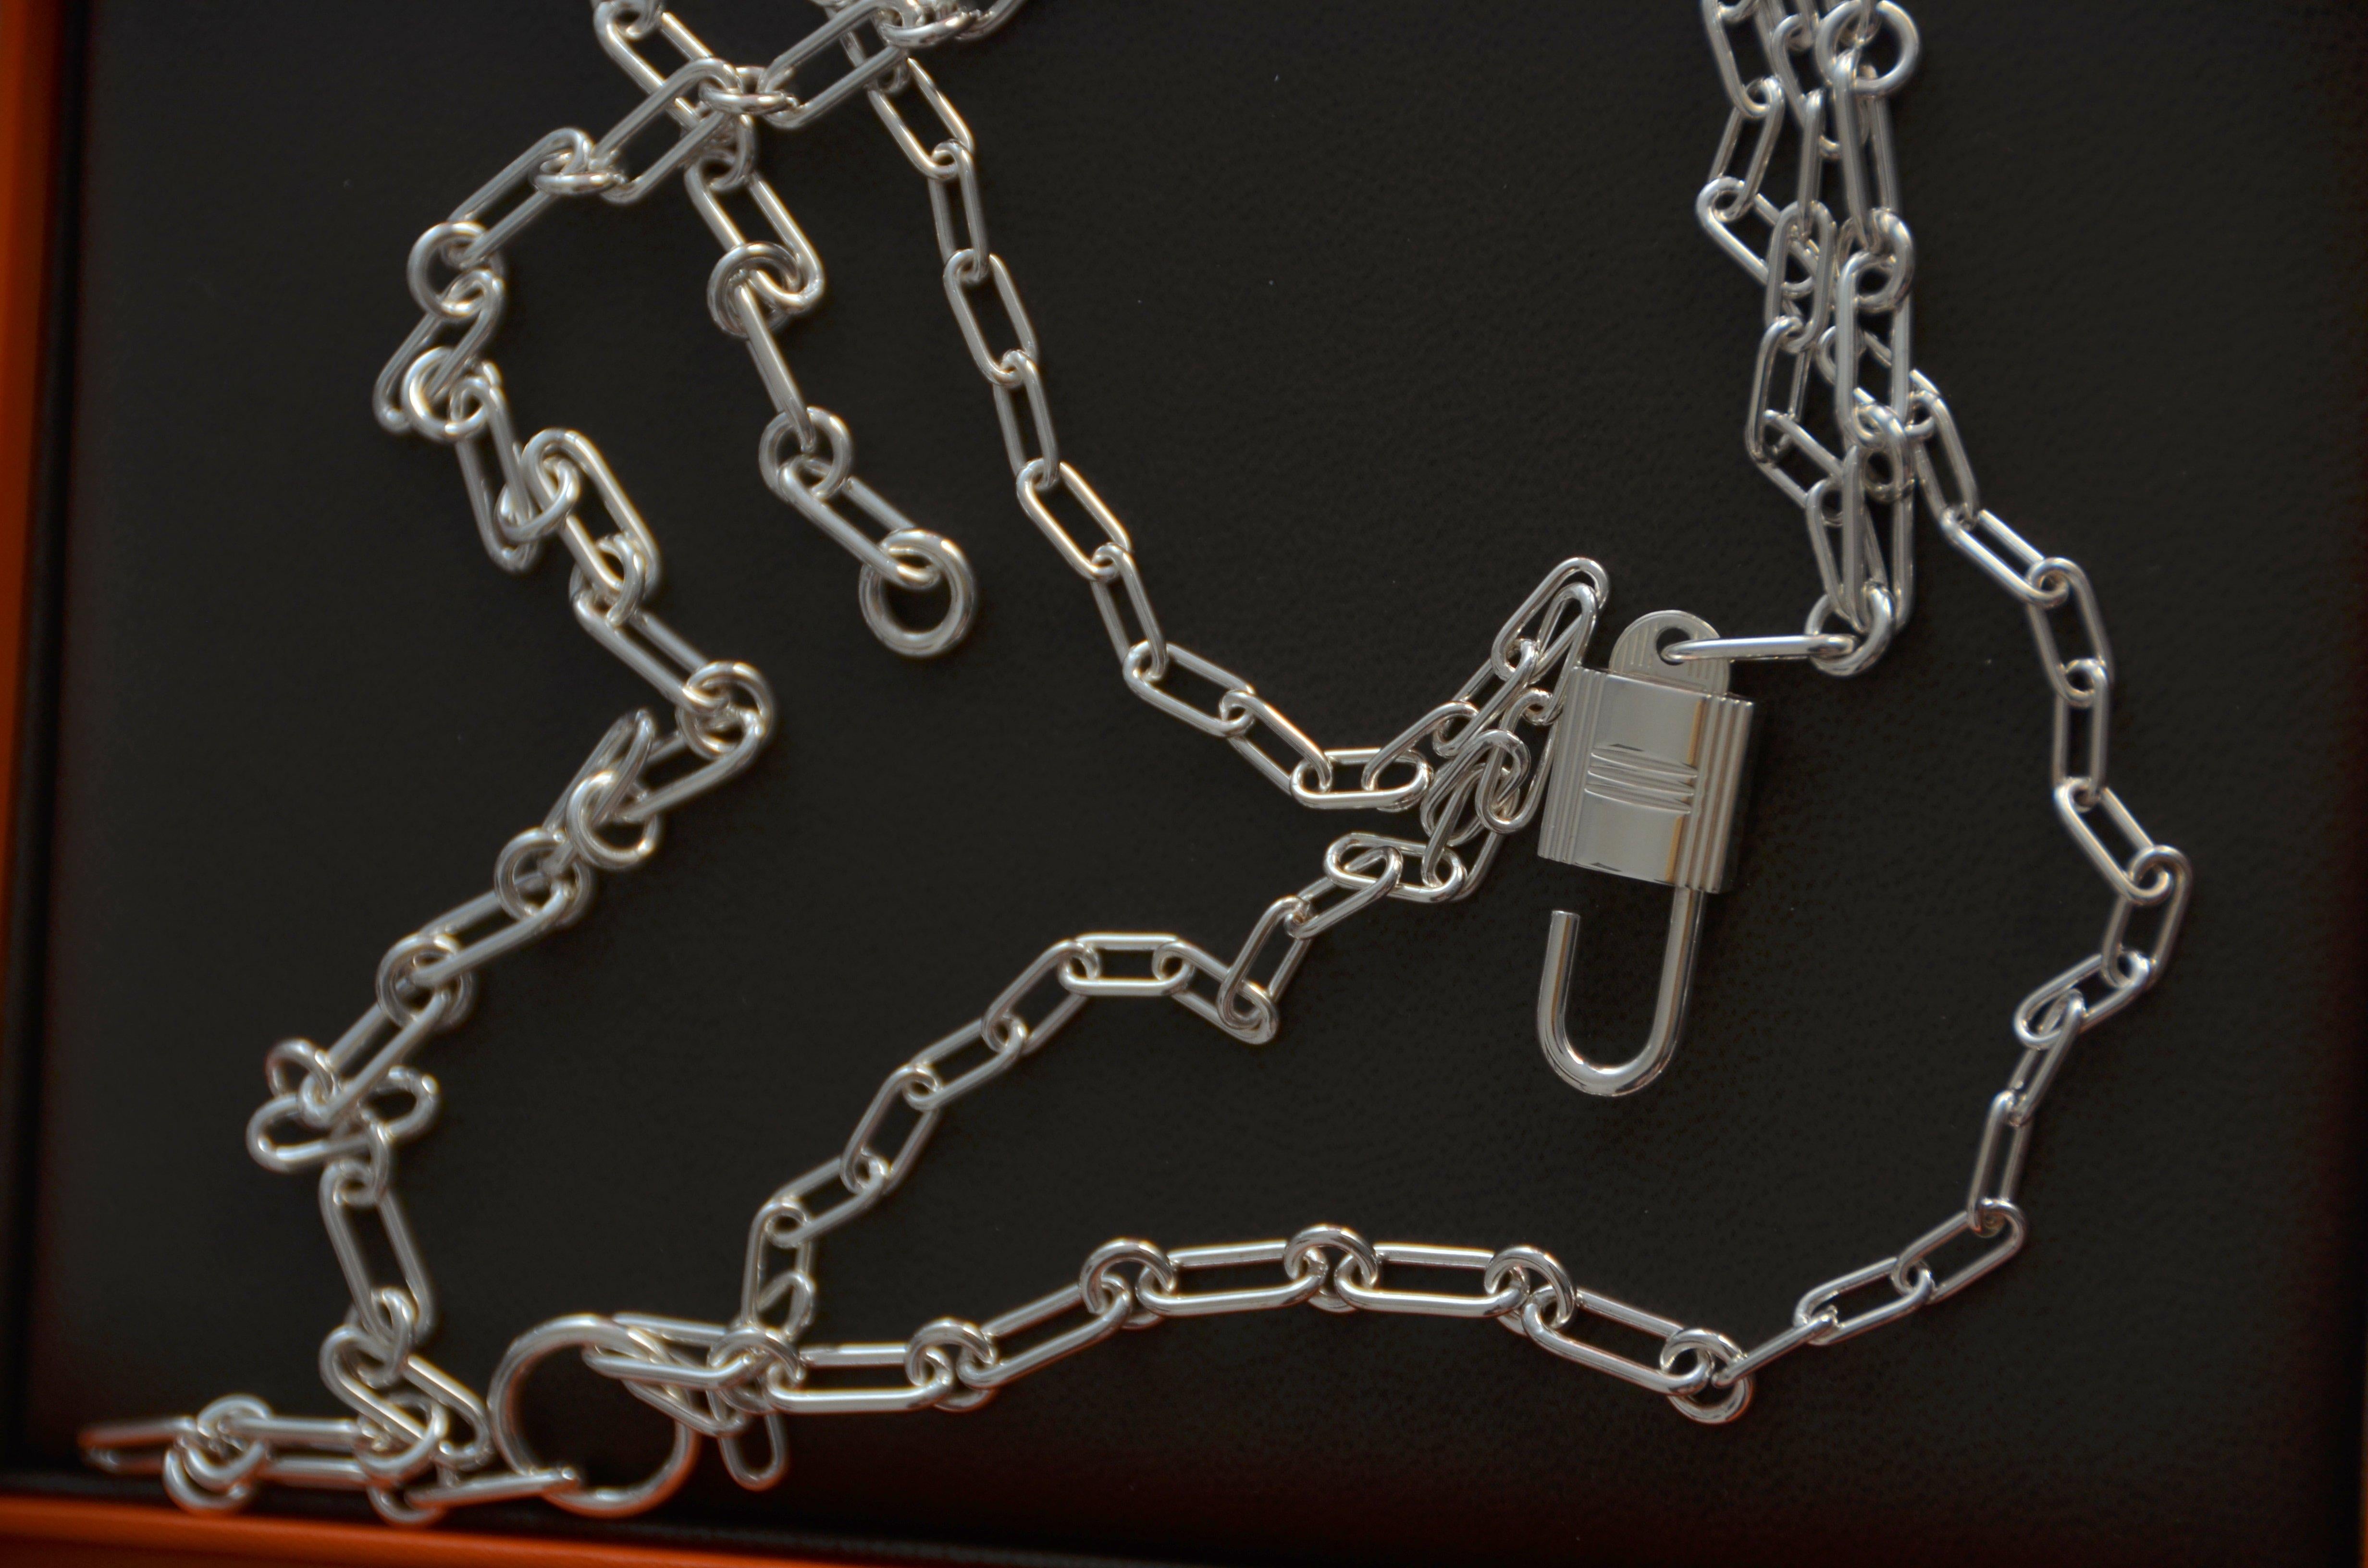 Hermes Alphakelly lange Halskette, mittleres Modell
Lange Halskette aus Sterlingsilber. Das Vorhängeschloss, ein ikonisches Motiv der Kelly-Bag, erscheint in einer silbernen Version und zeigt ein Zusammenspiel von unterschiedlich großen